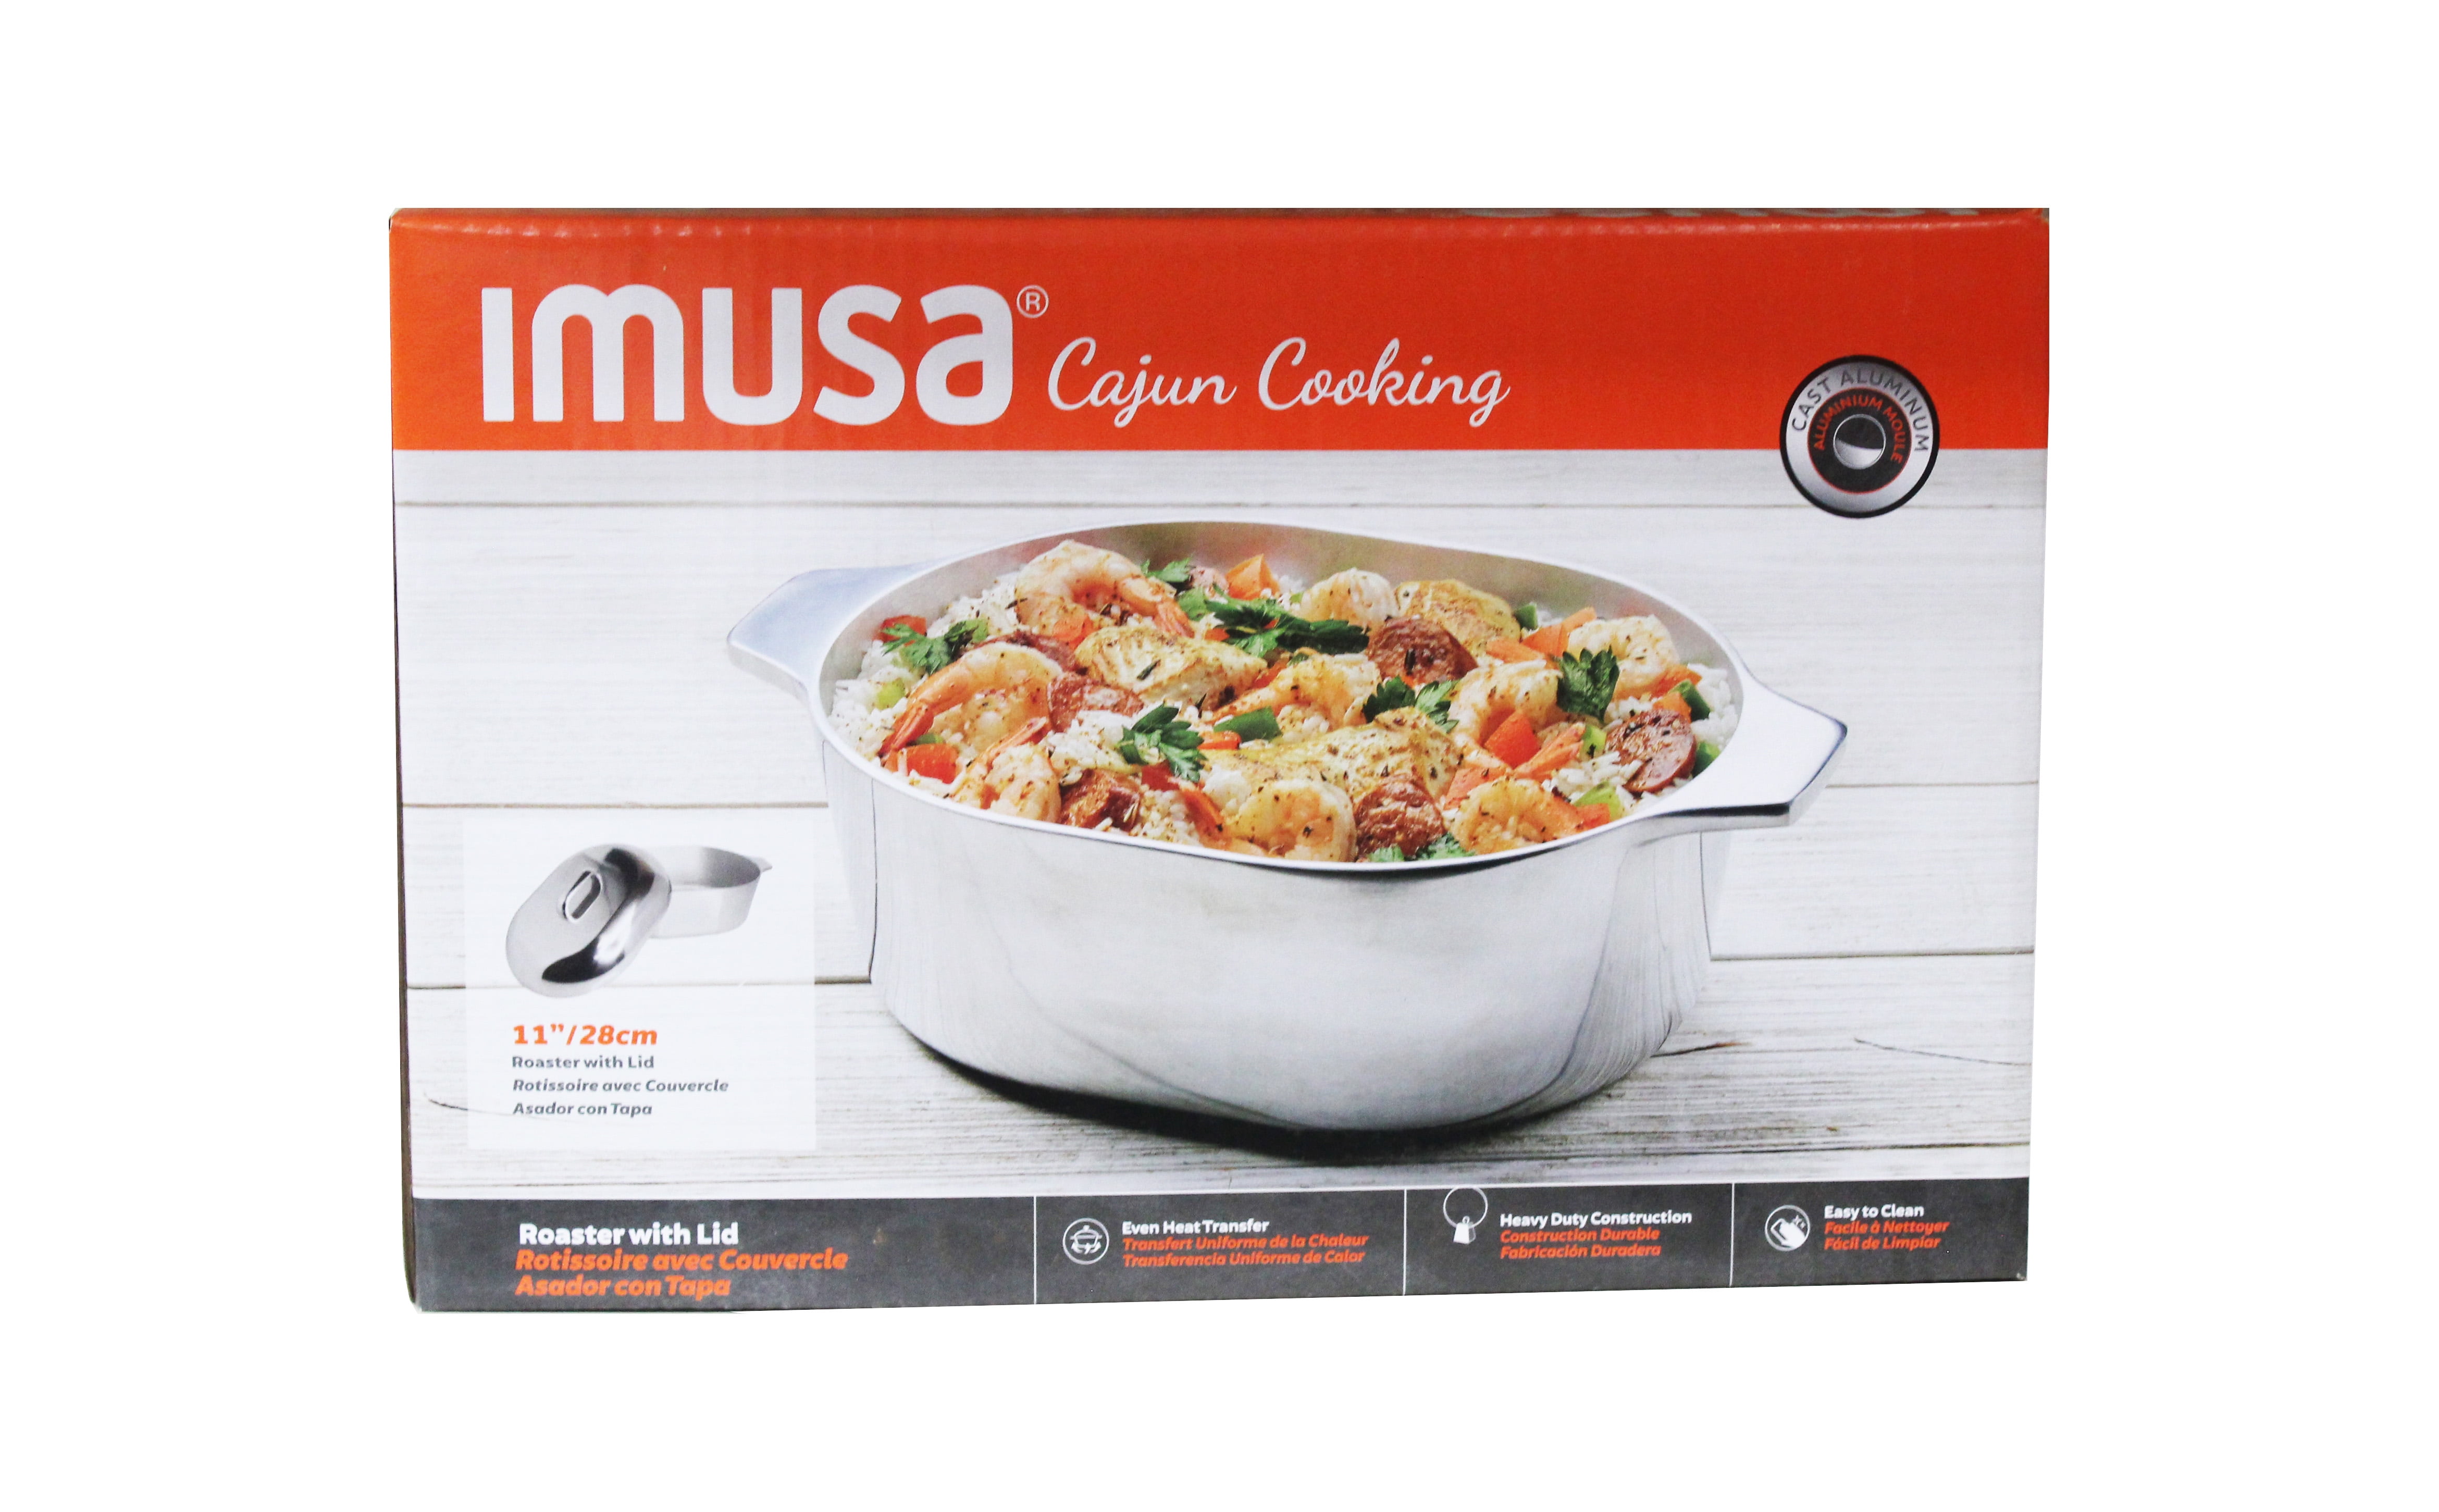 IMUSA Imu-89304 8-Piece Cajun Cookware Set - Aluminum